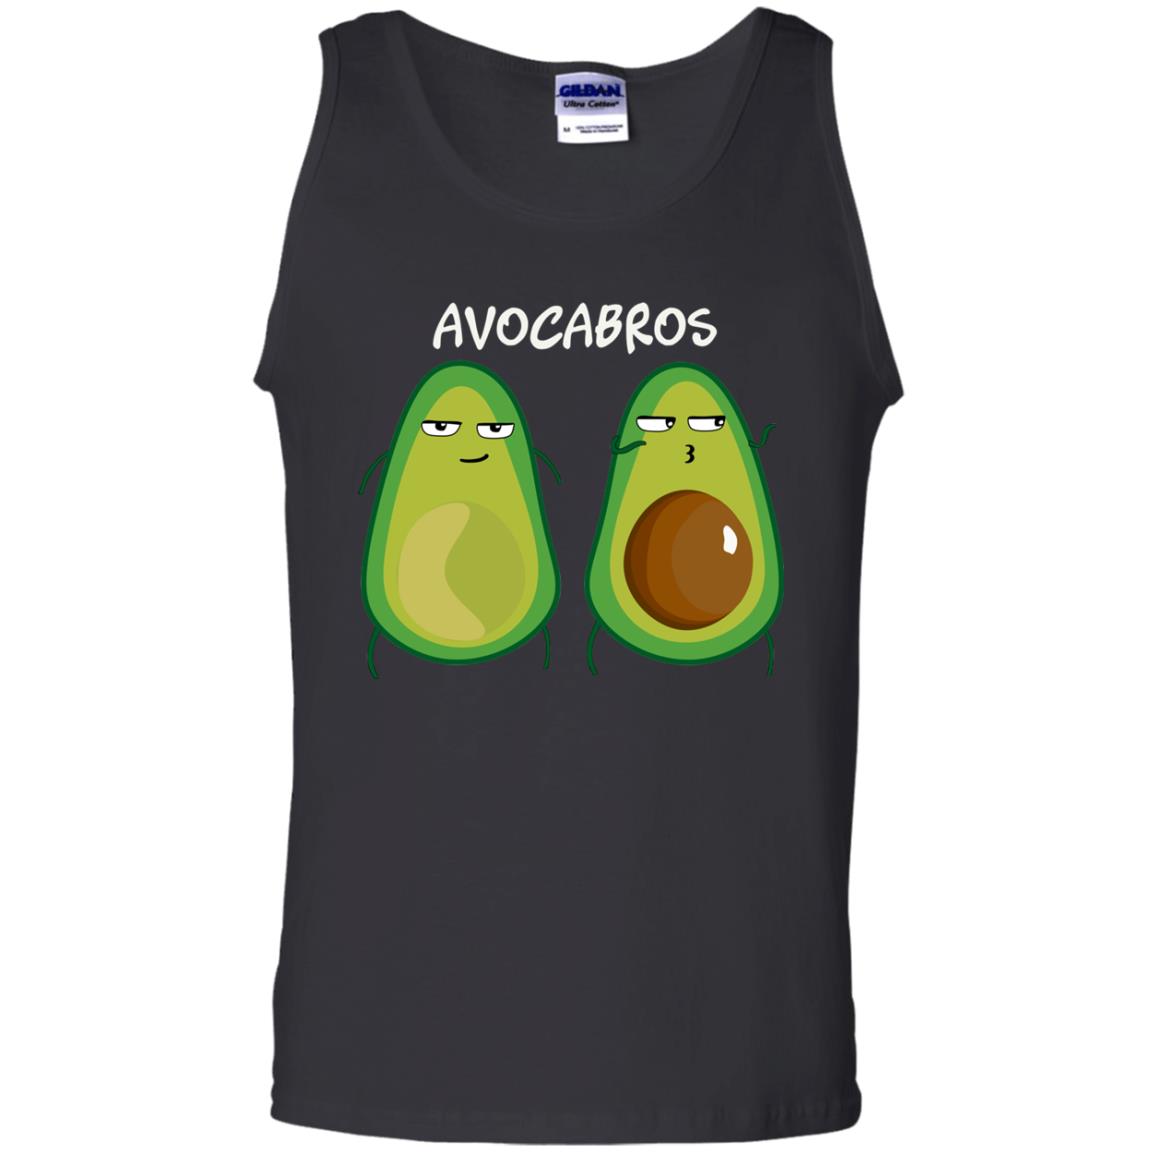 Funny Avocado T-shirt For Bros And VegansG220 Gildan 100% Cotton Tank Top